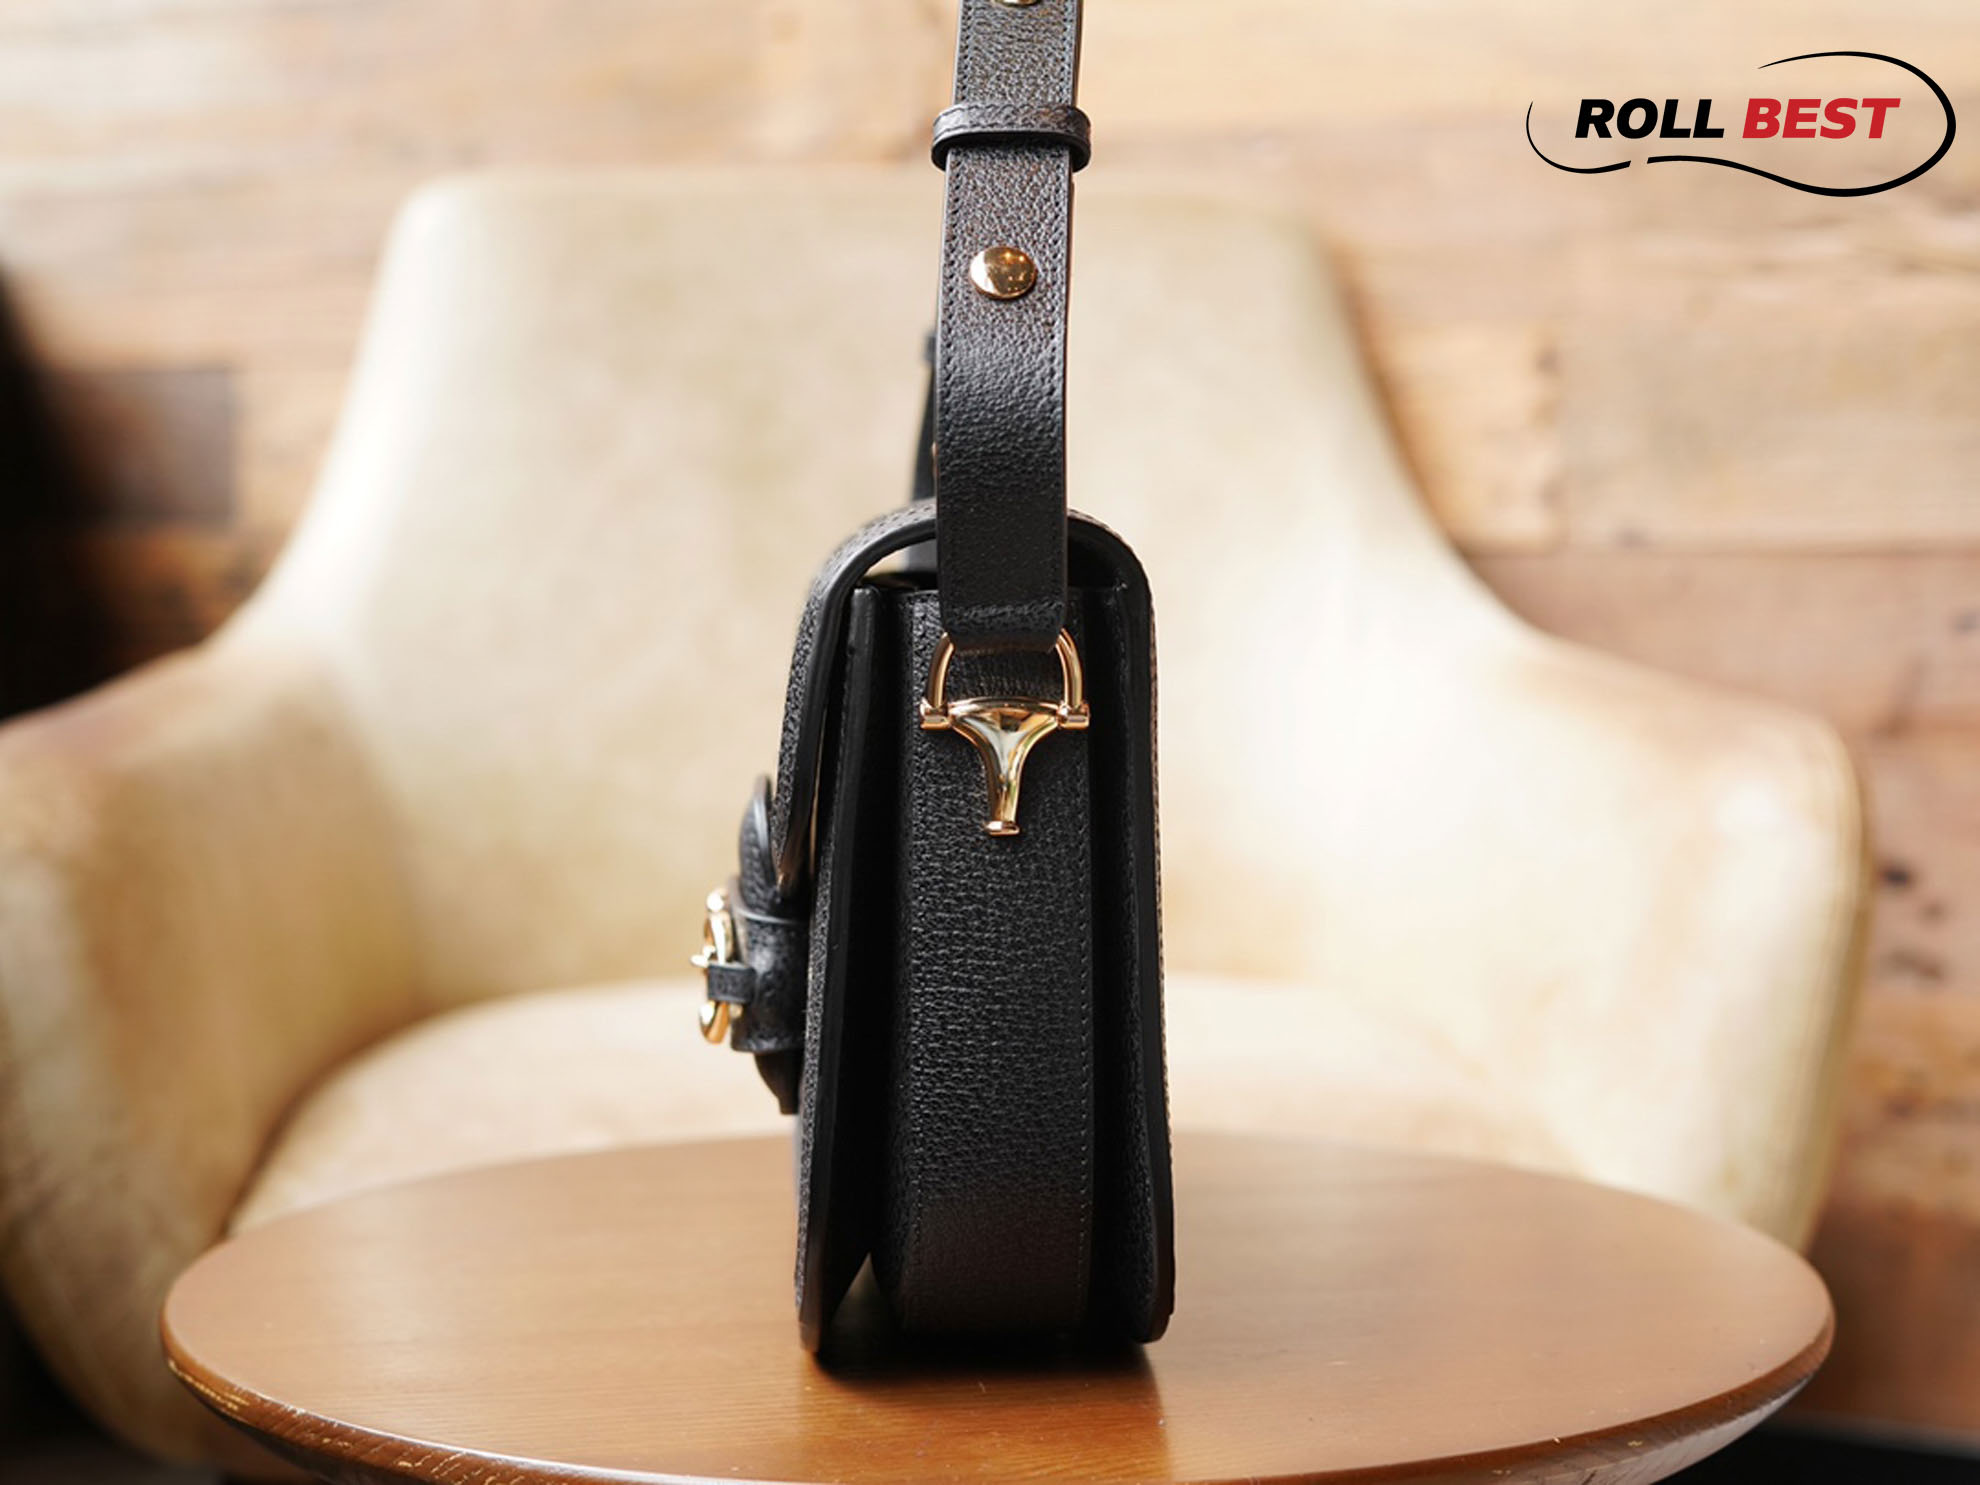 Túi Gucci Horsebit 1955 Shoulder Bag Đen GG Supreme Denim